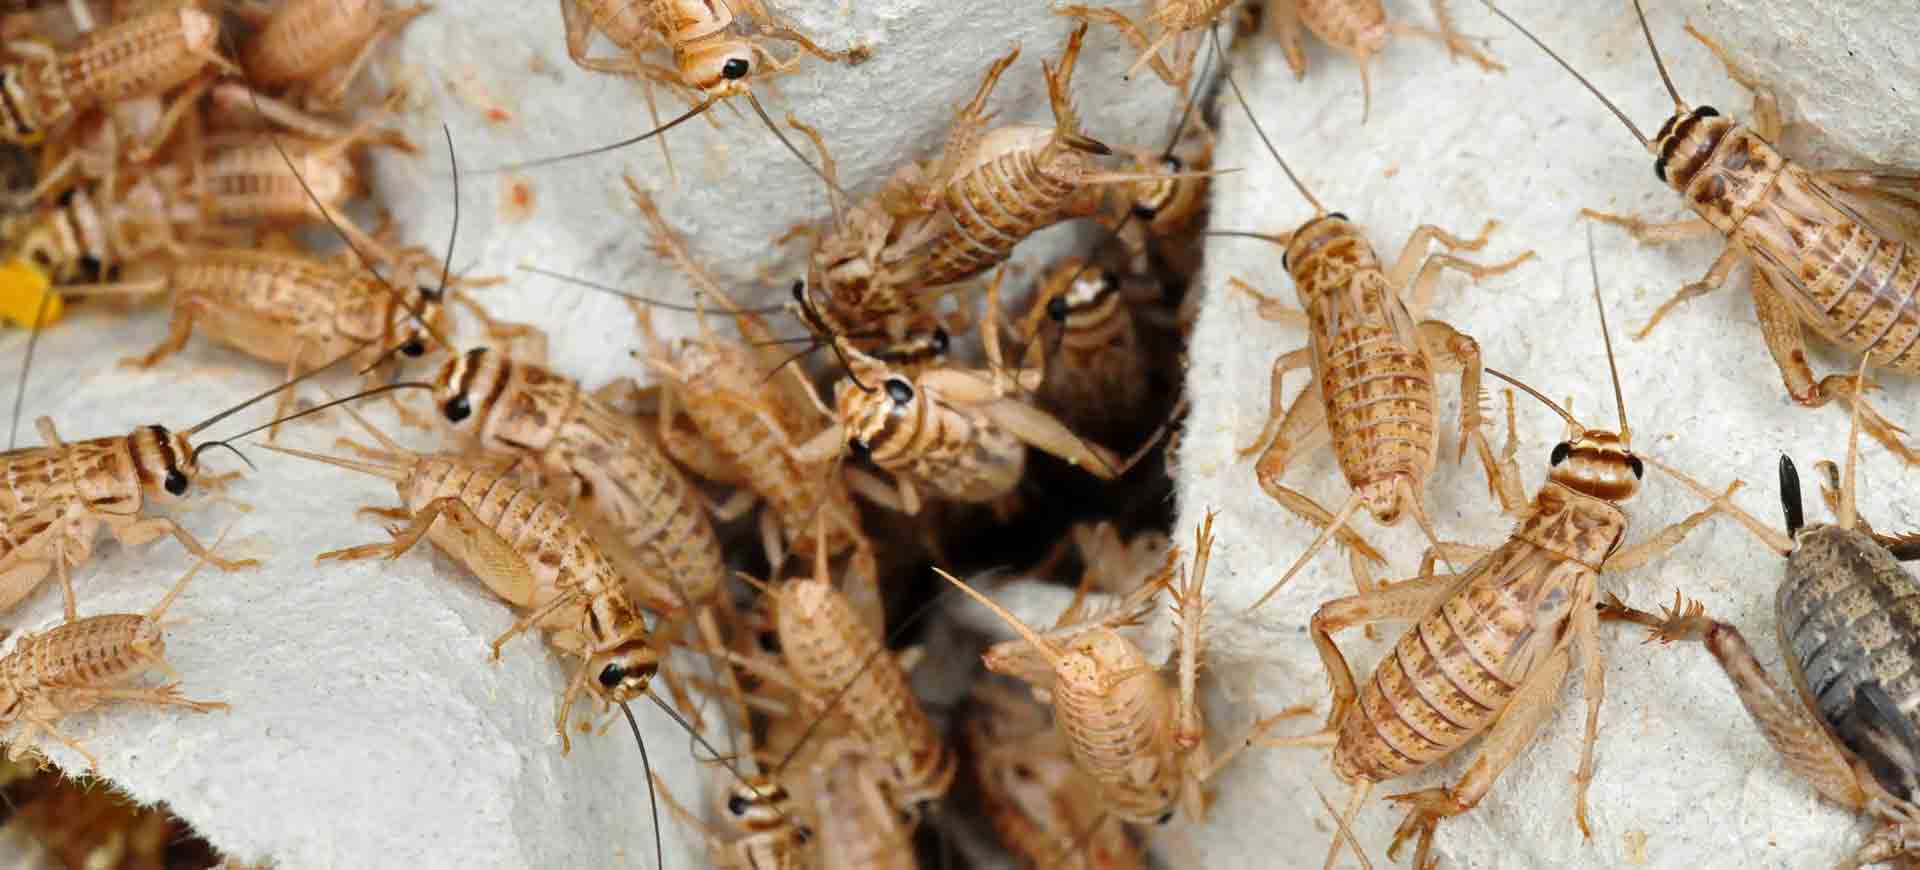 cricket pest control sabre springs